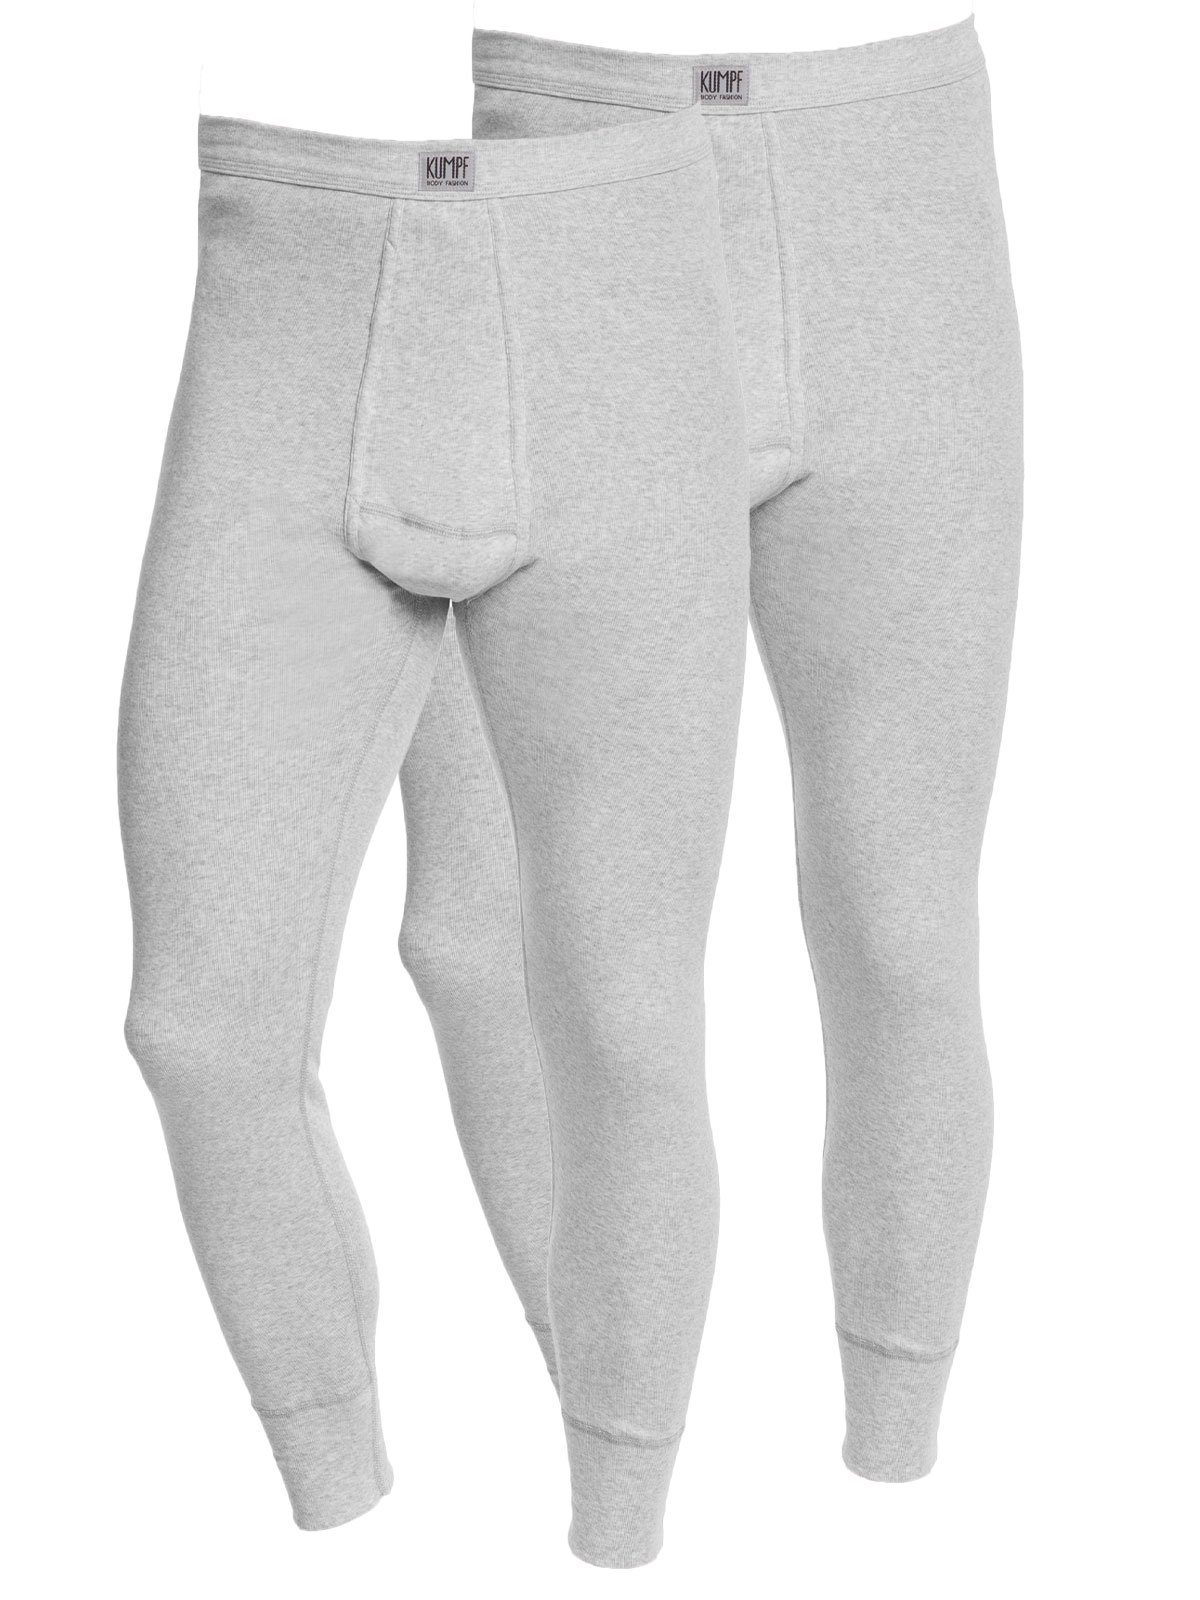 KUMPF Lange Unterhose 2er Sparpack Herren Unterhose Workerwear (Spar-Set, 2-St) mit eingriff kiesel-melange